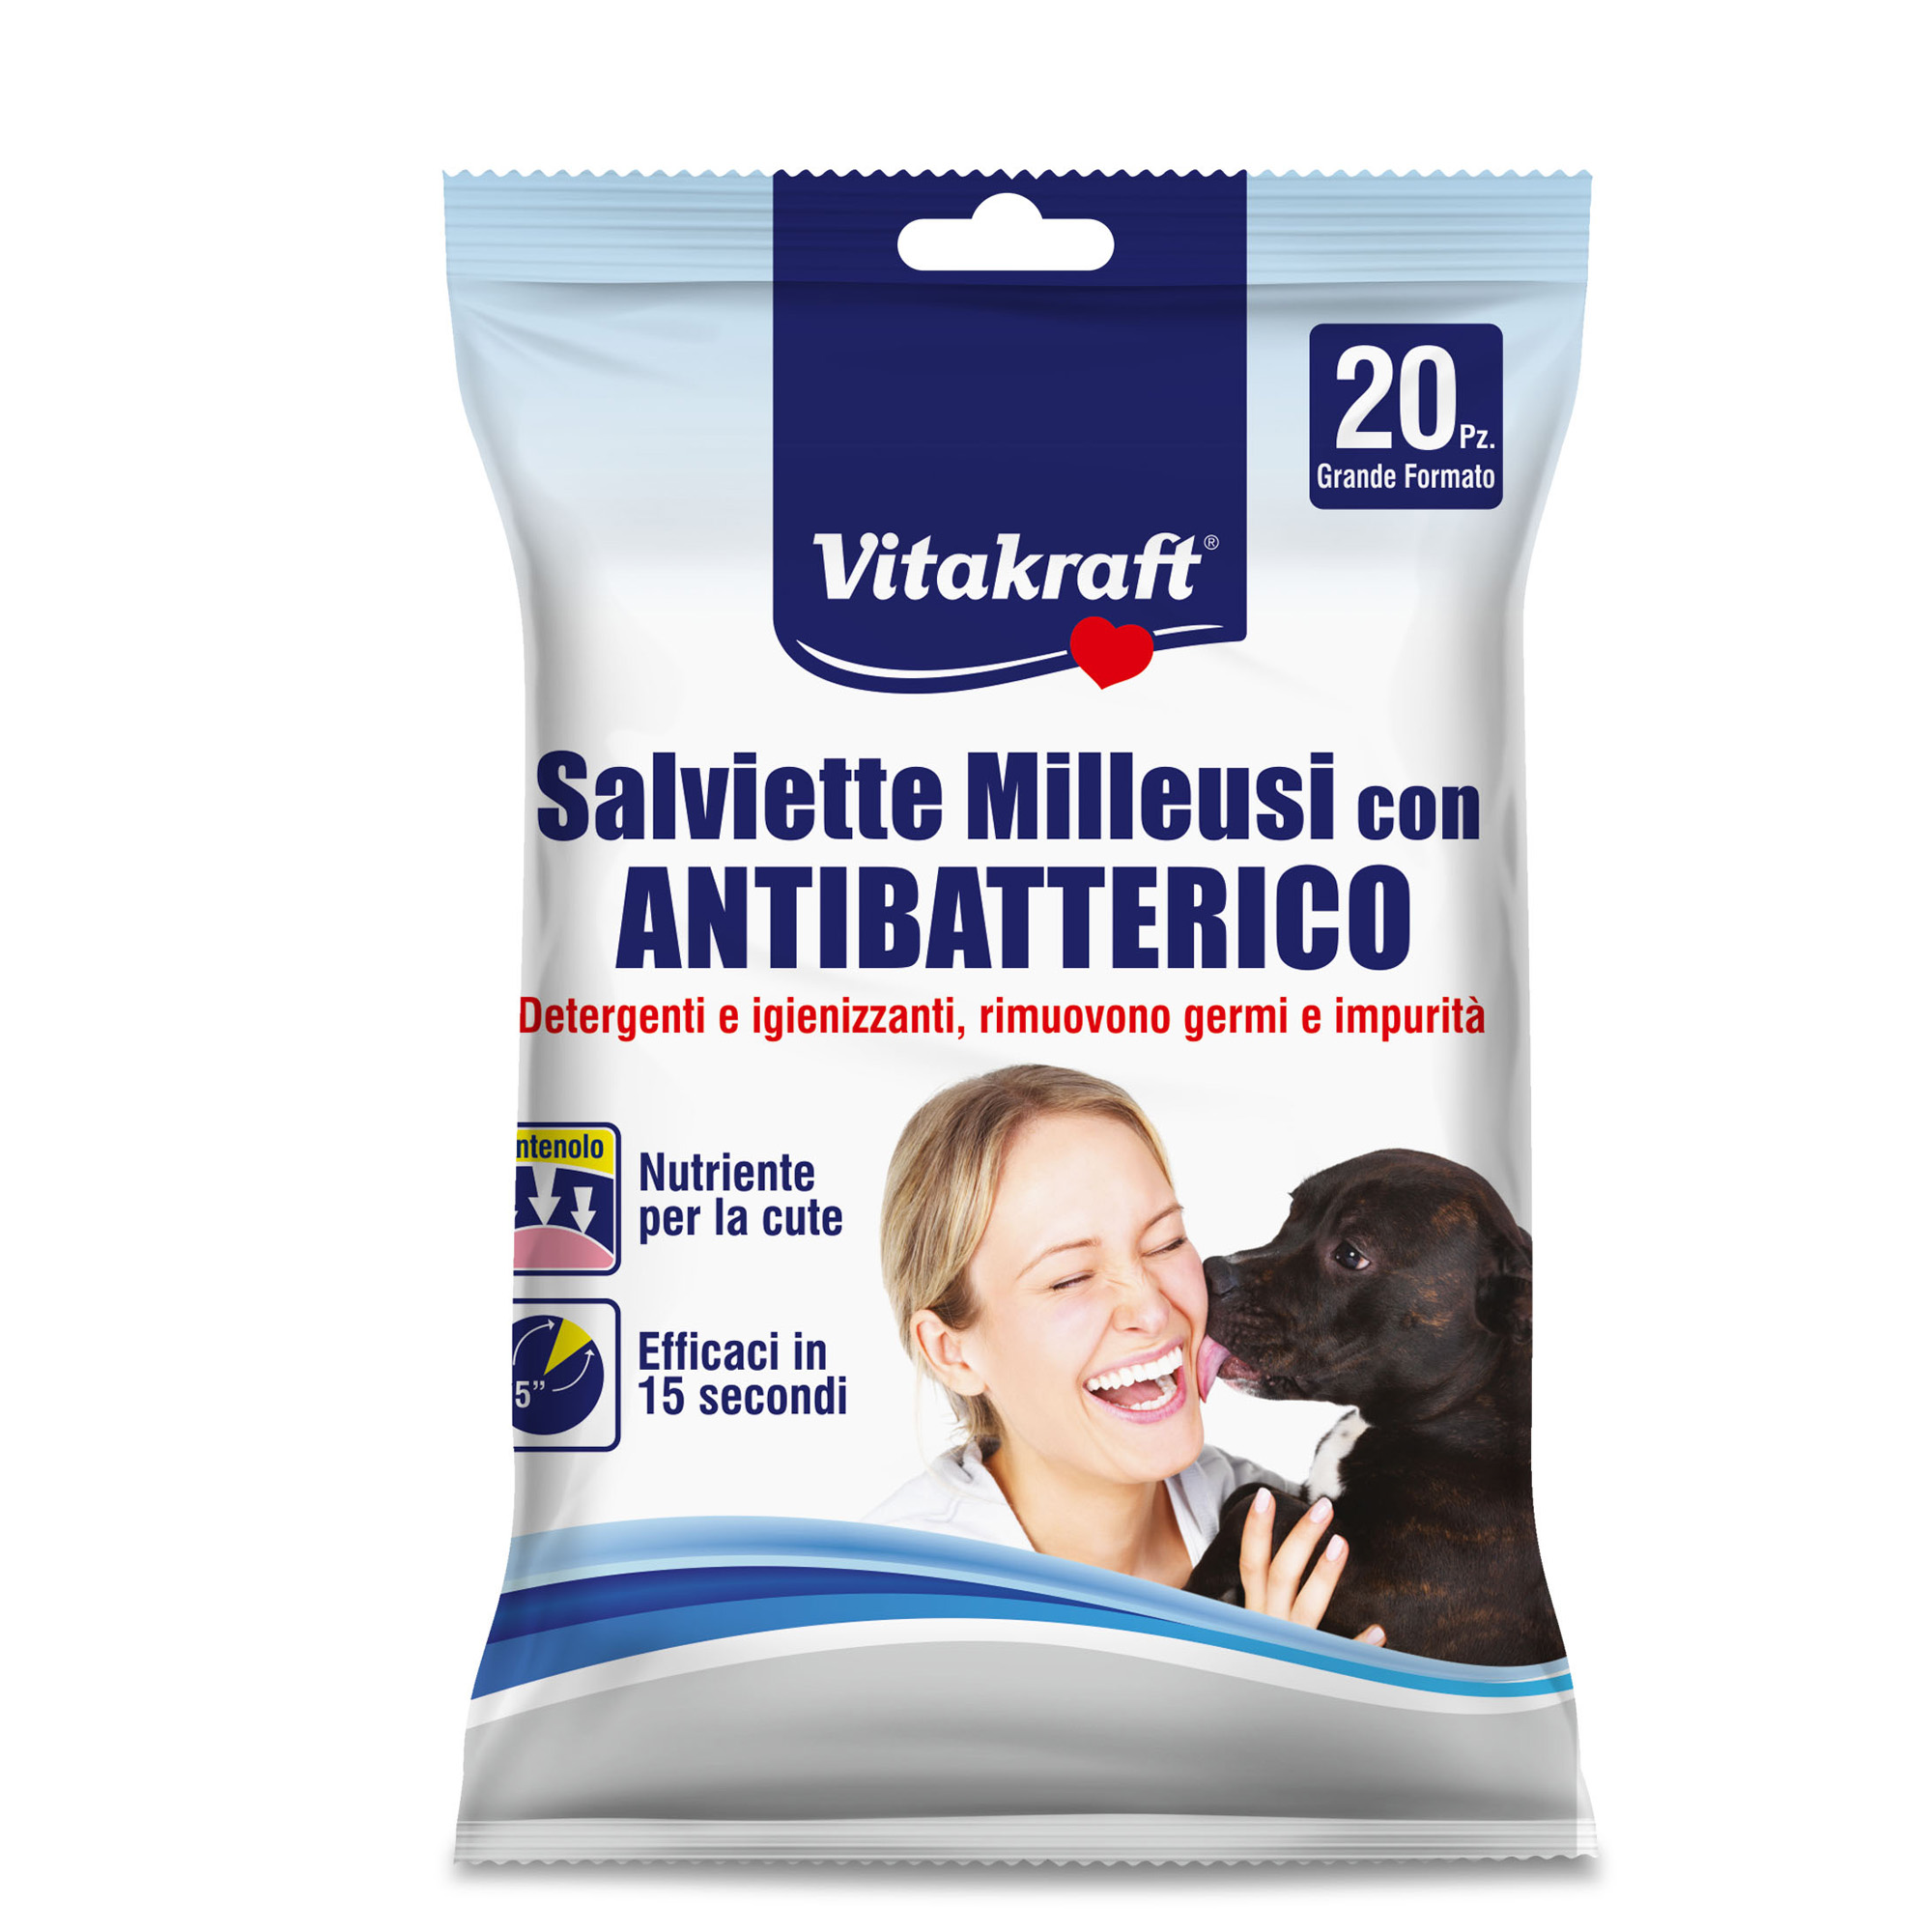 Salviette milleusi con antibatterico per animali (cani, gatti, roditori) - Vitakraft - conf. 20 pezzi